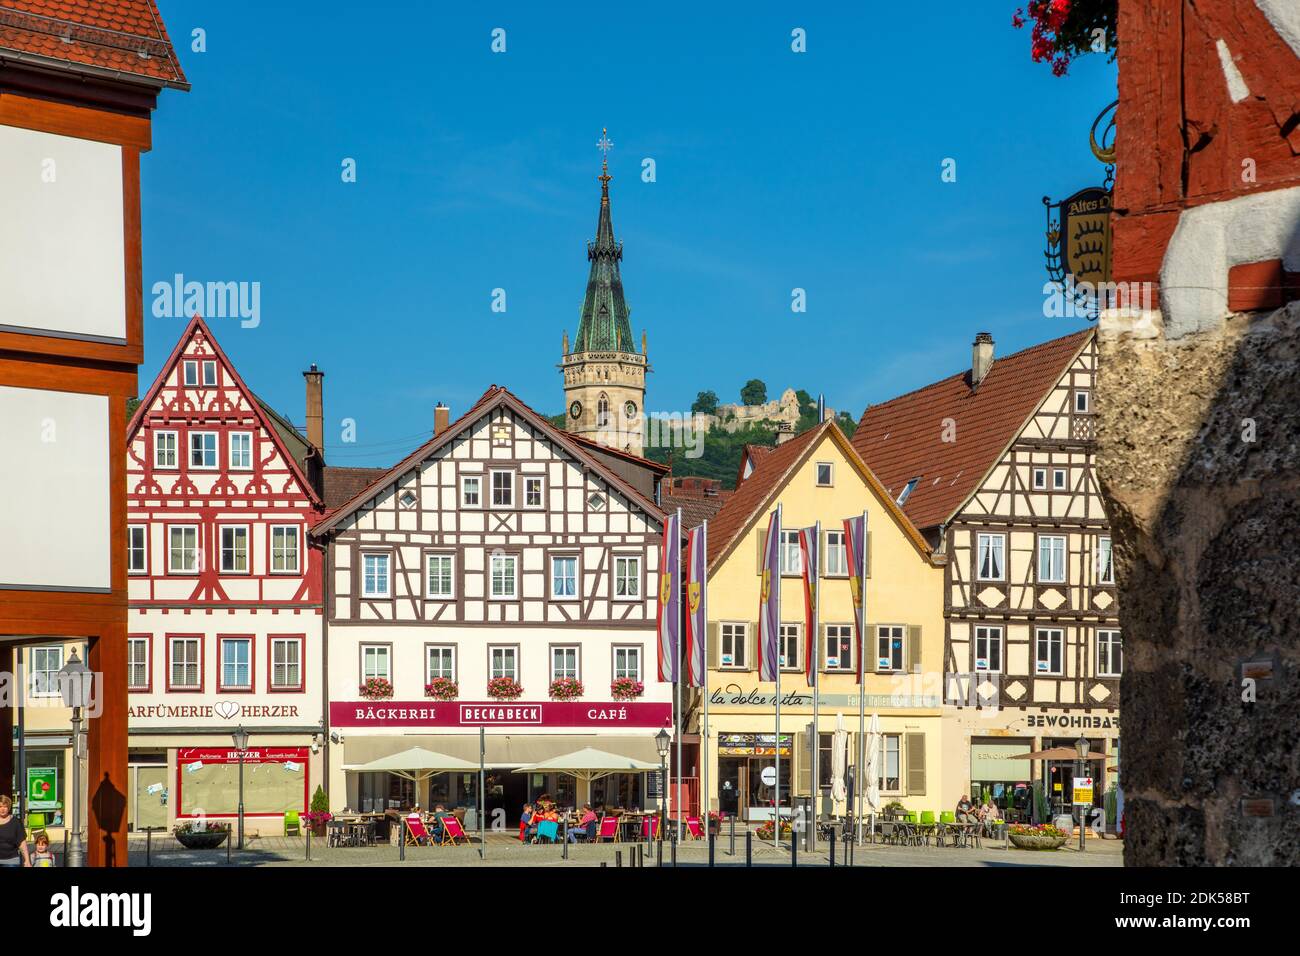 Allemagne, Bade-Wurtemberg, ville de Bad Urach, vue sur la place du marché avec la tour de l'église St, Amandus et le château d'Urach Banque D'Images